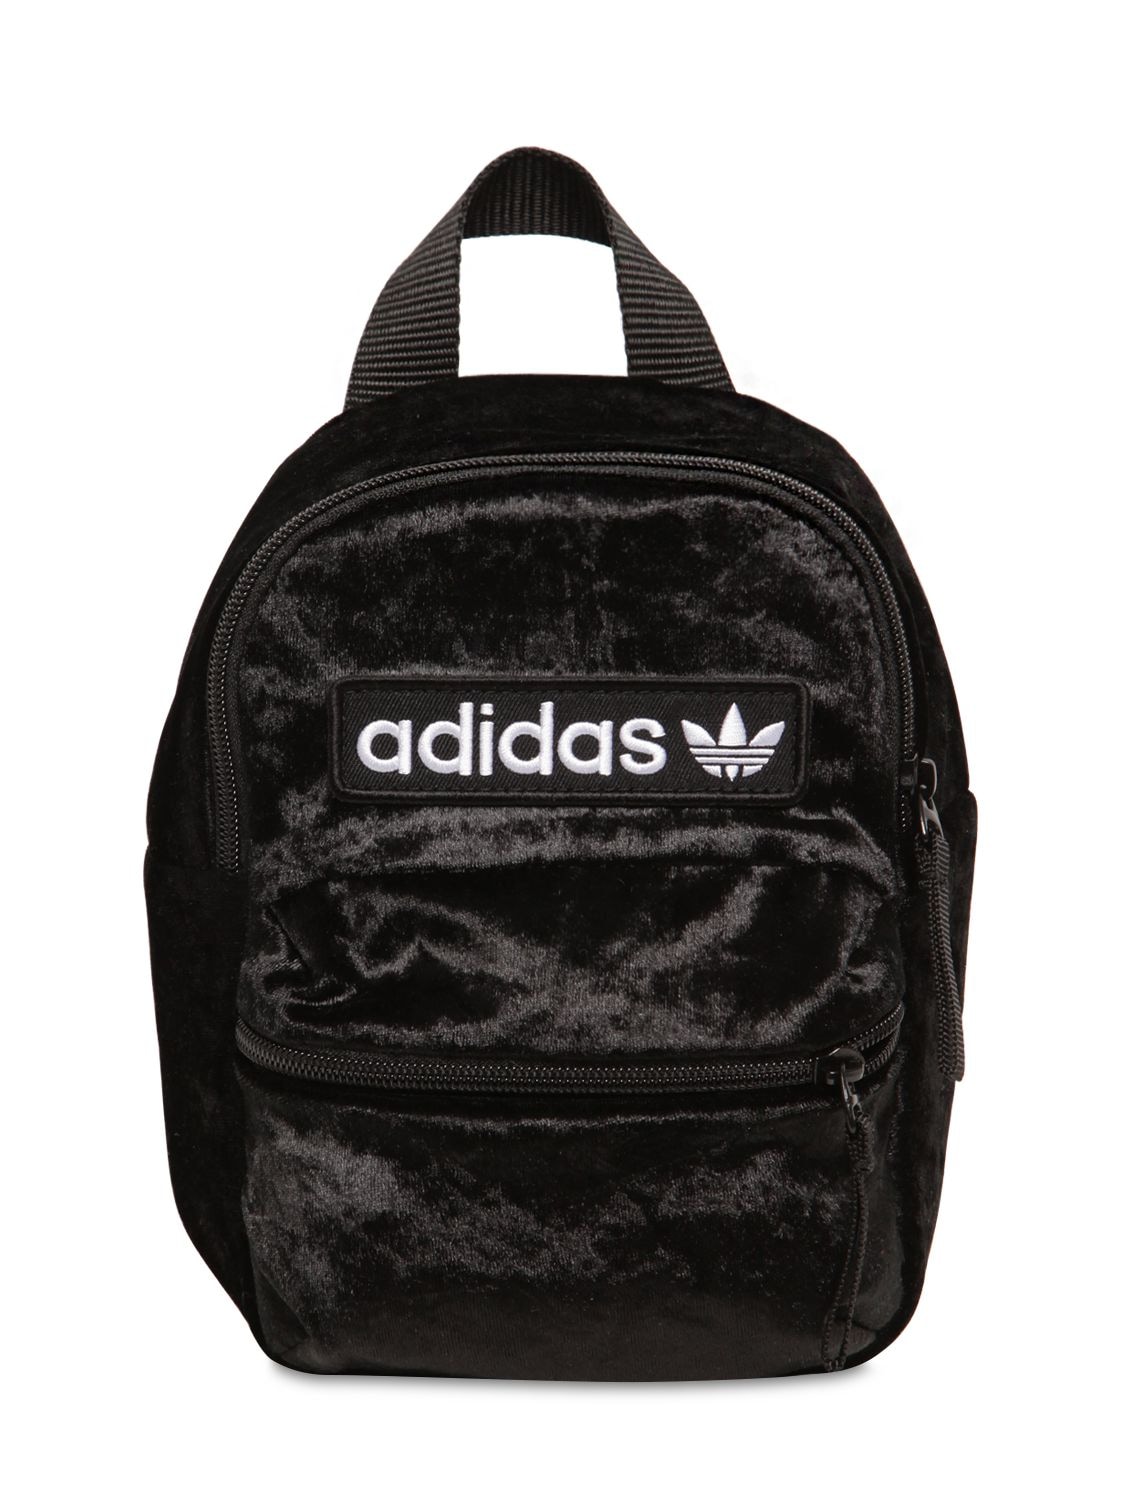 adidas mini backpack velvet